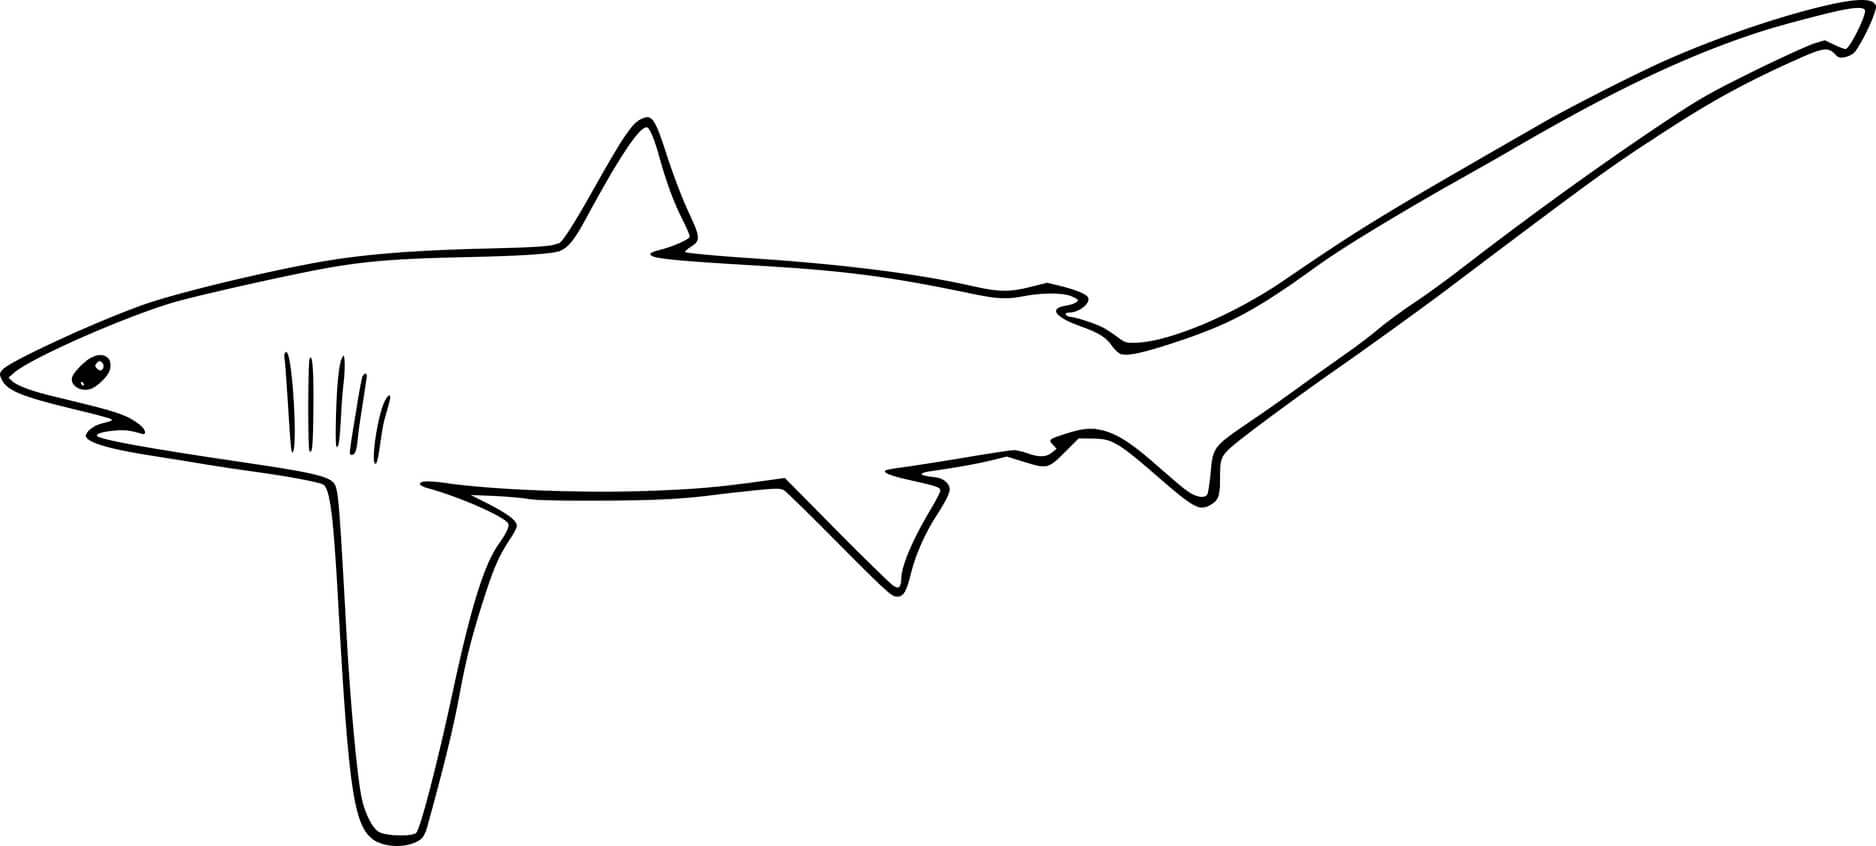 Common Thresher Shark